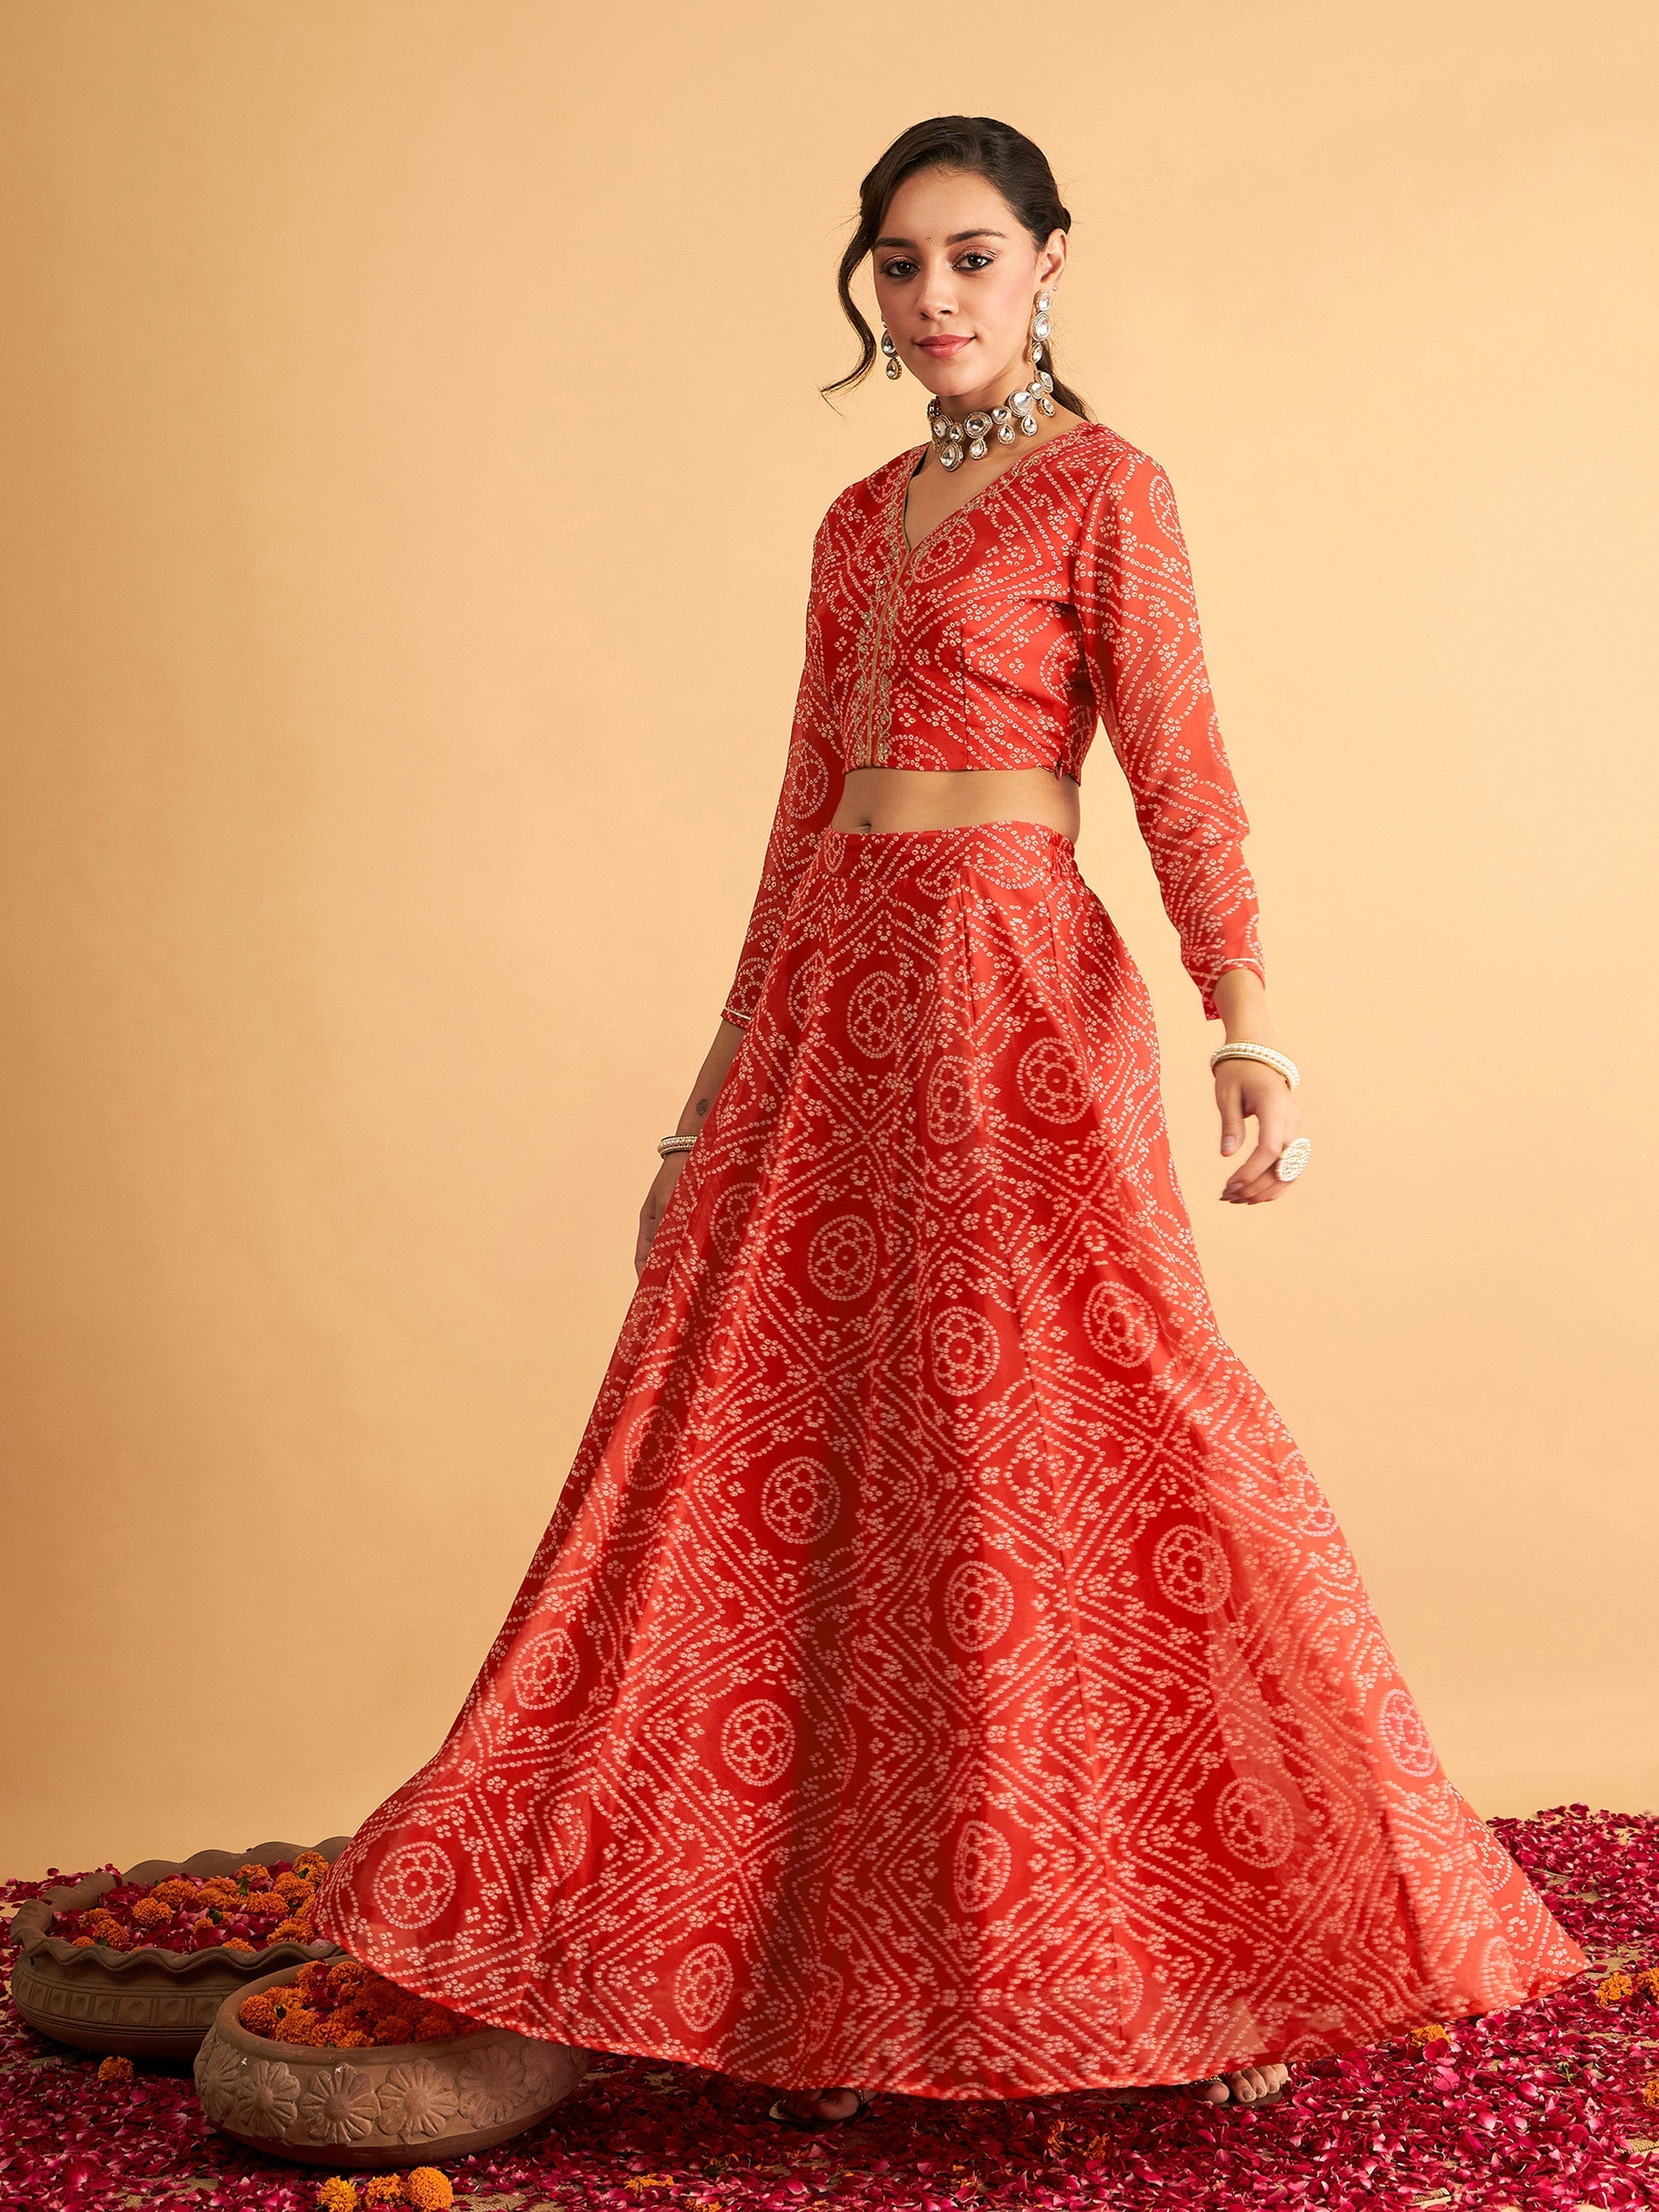 Women's Red & White Bandhej Anarkali Skirt With Crop Top - Lyush